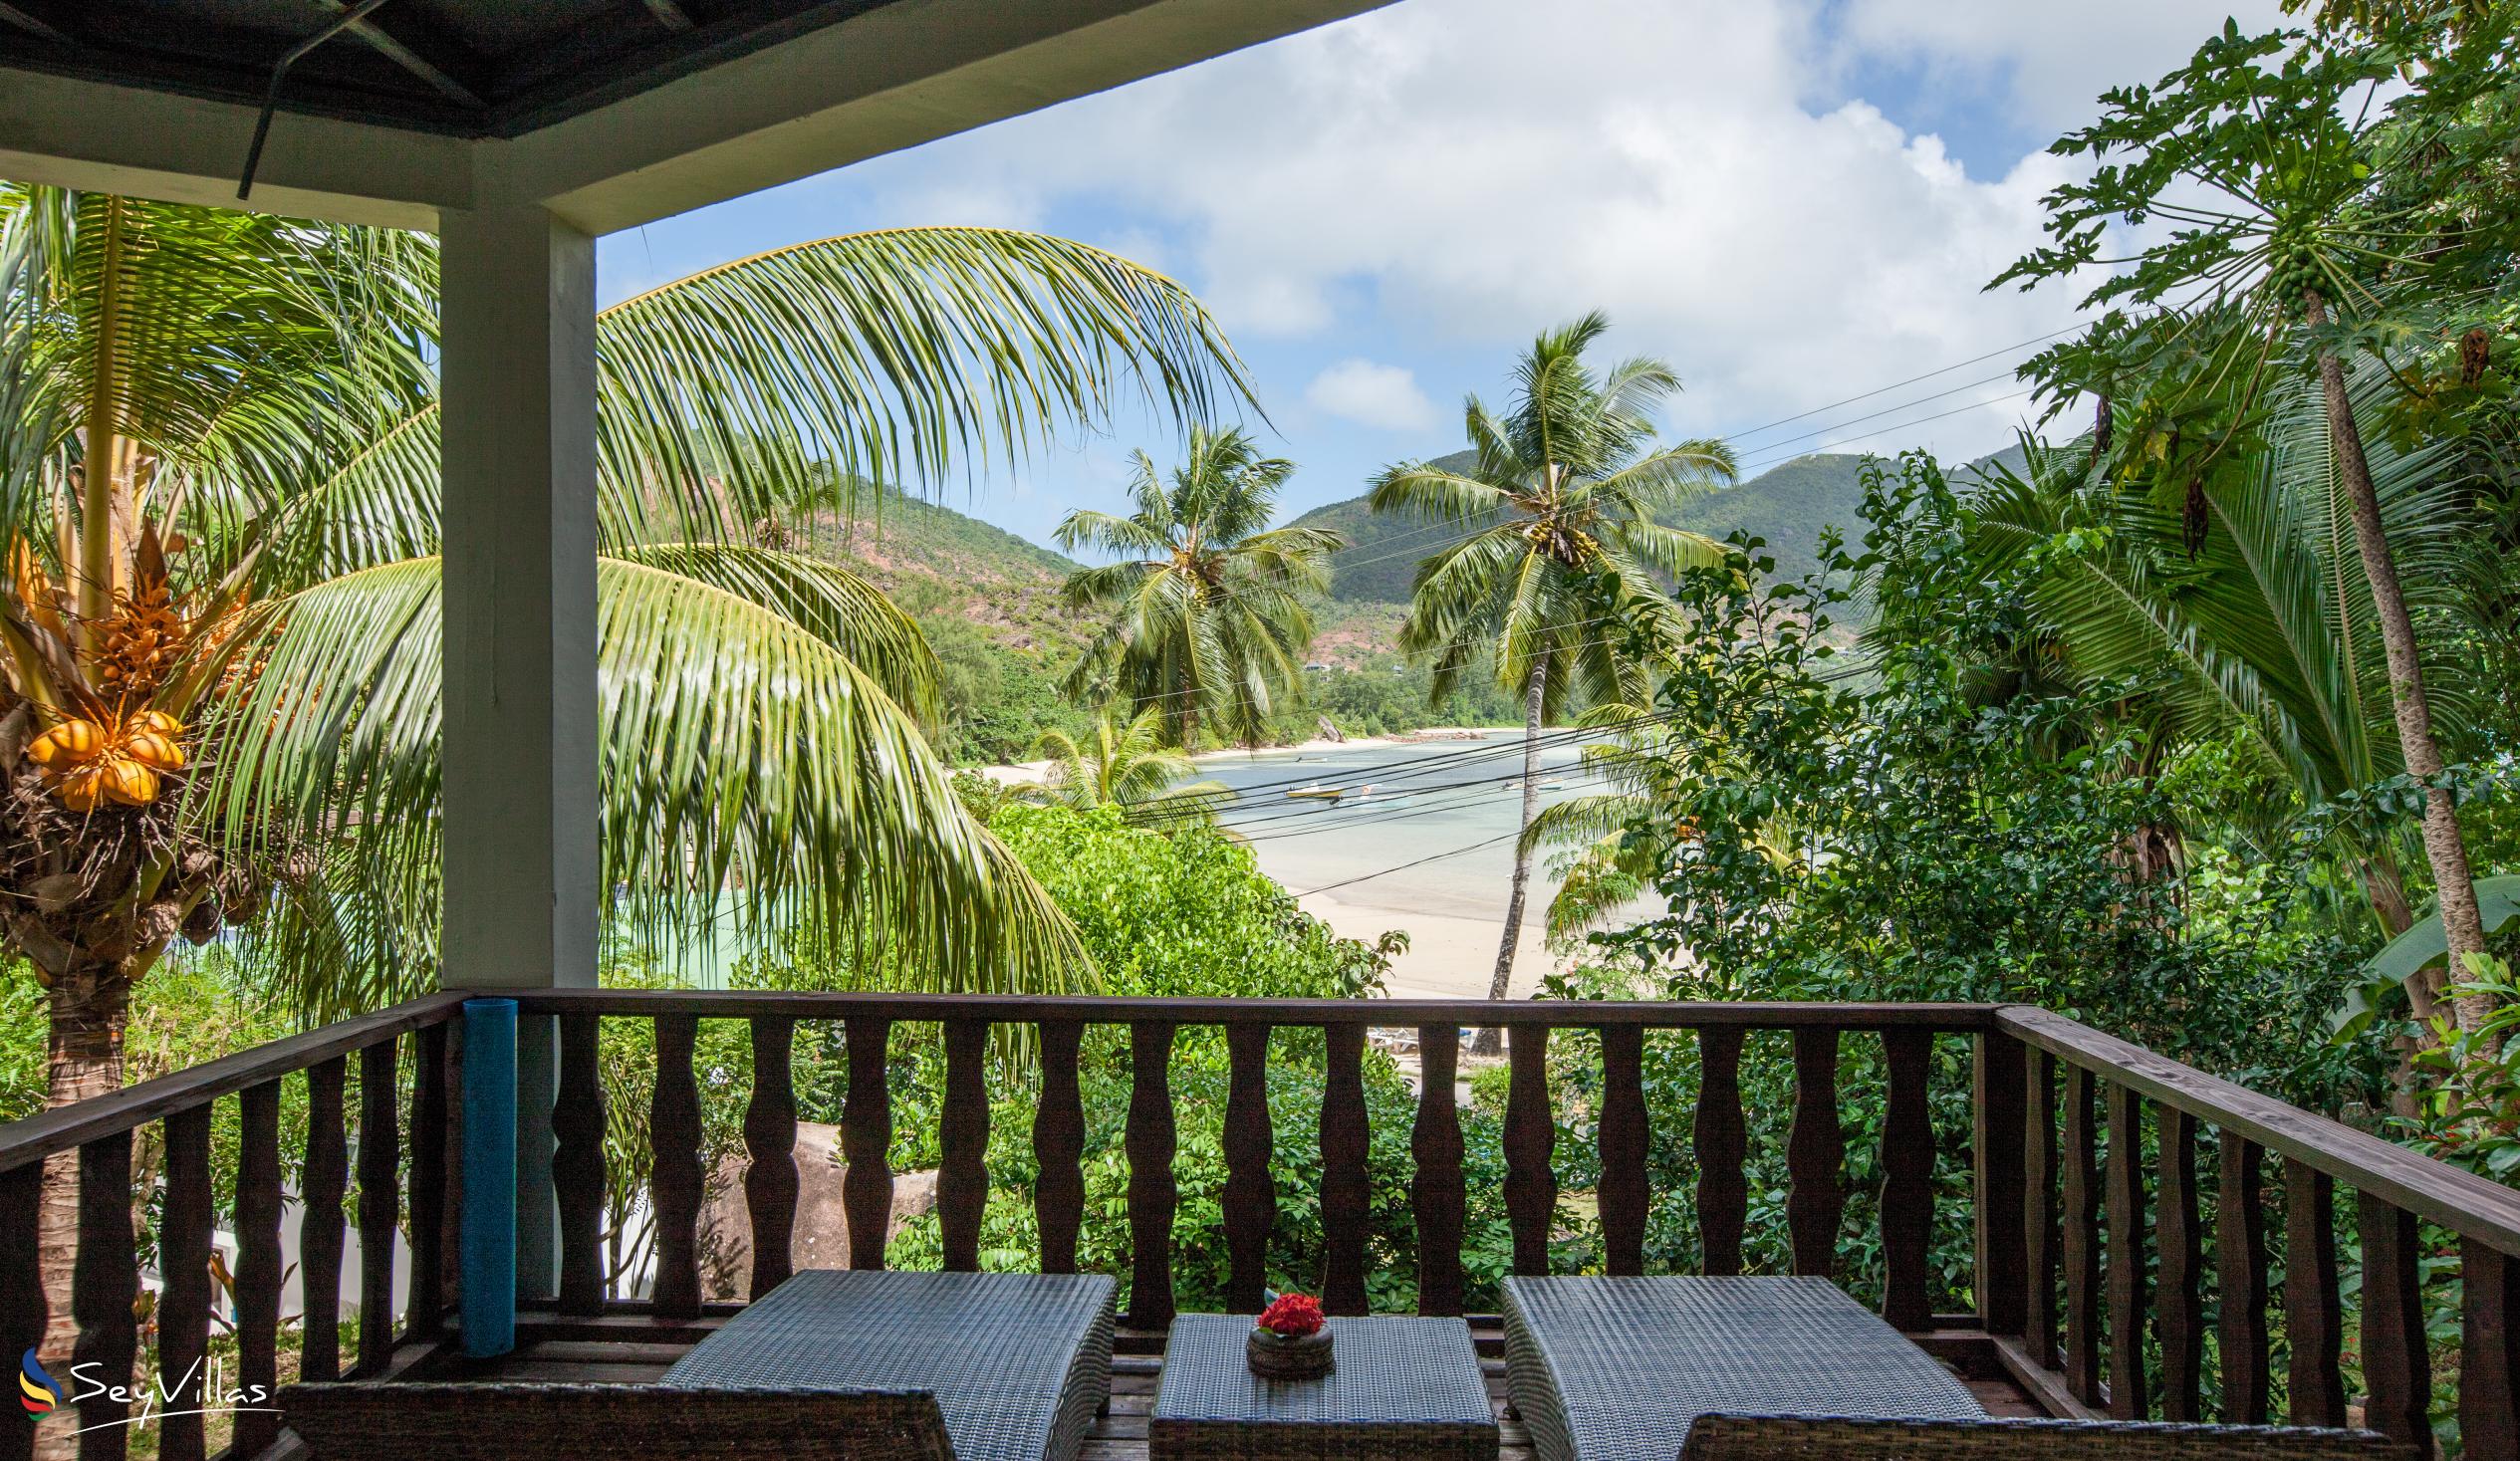 Photo 67: Sea View Lodge - Small Villa - Praslin (Seychelles)